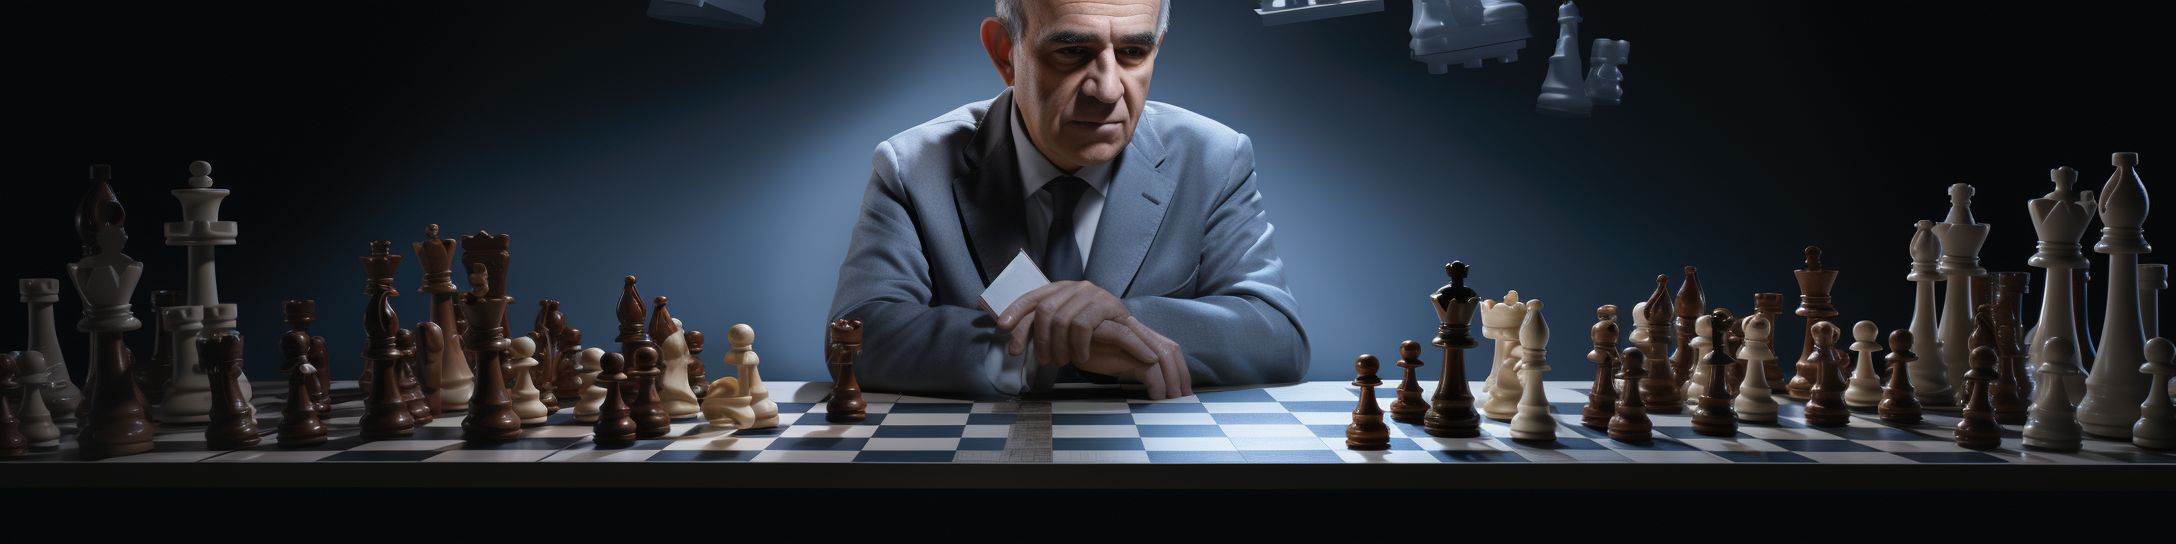 Retrait du jeu d'échecs et entrée en politique